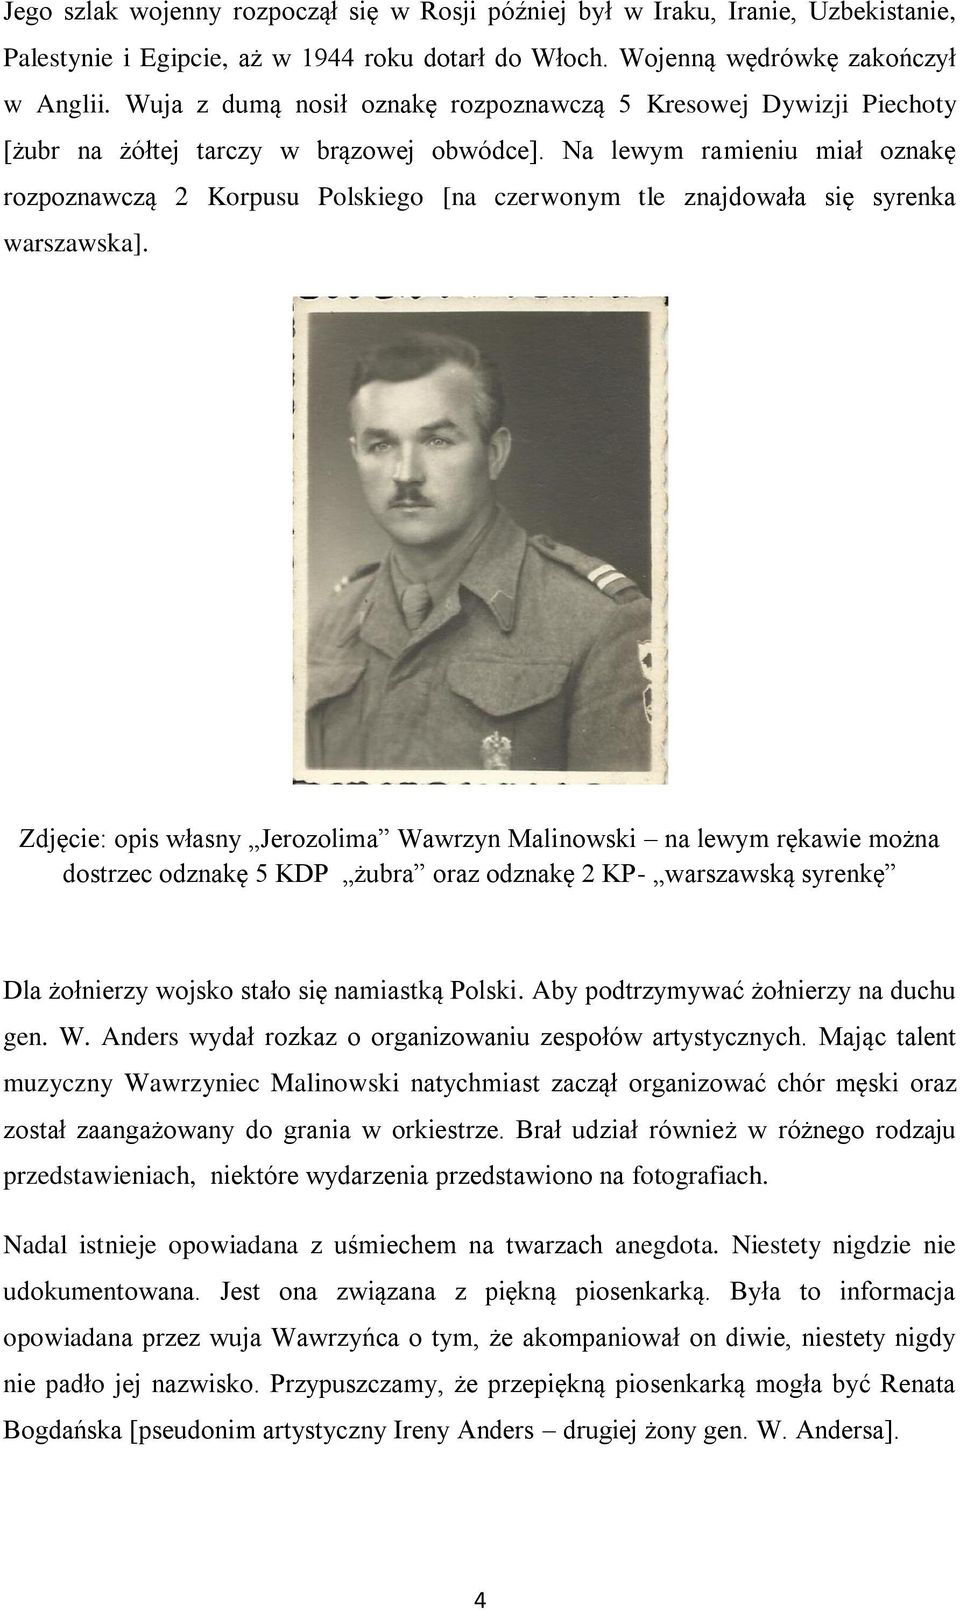 Na lewym ramieniu miał oznakę rozpoznawczą 2 Korpusu Polskiego [na czerwonym tle znajdowała się syrenka warszawska].